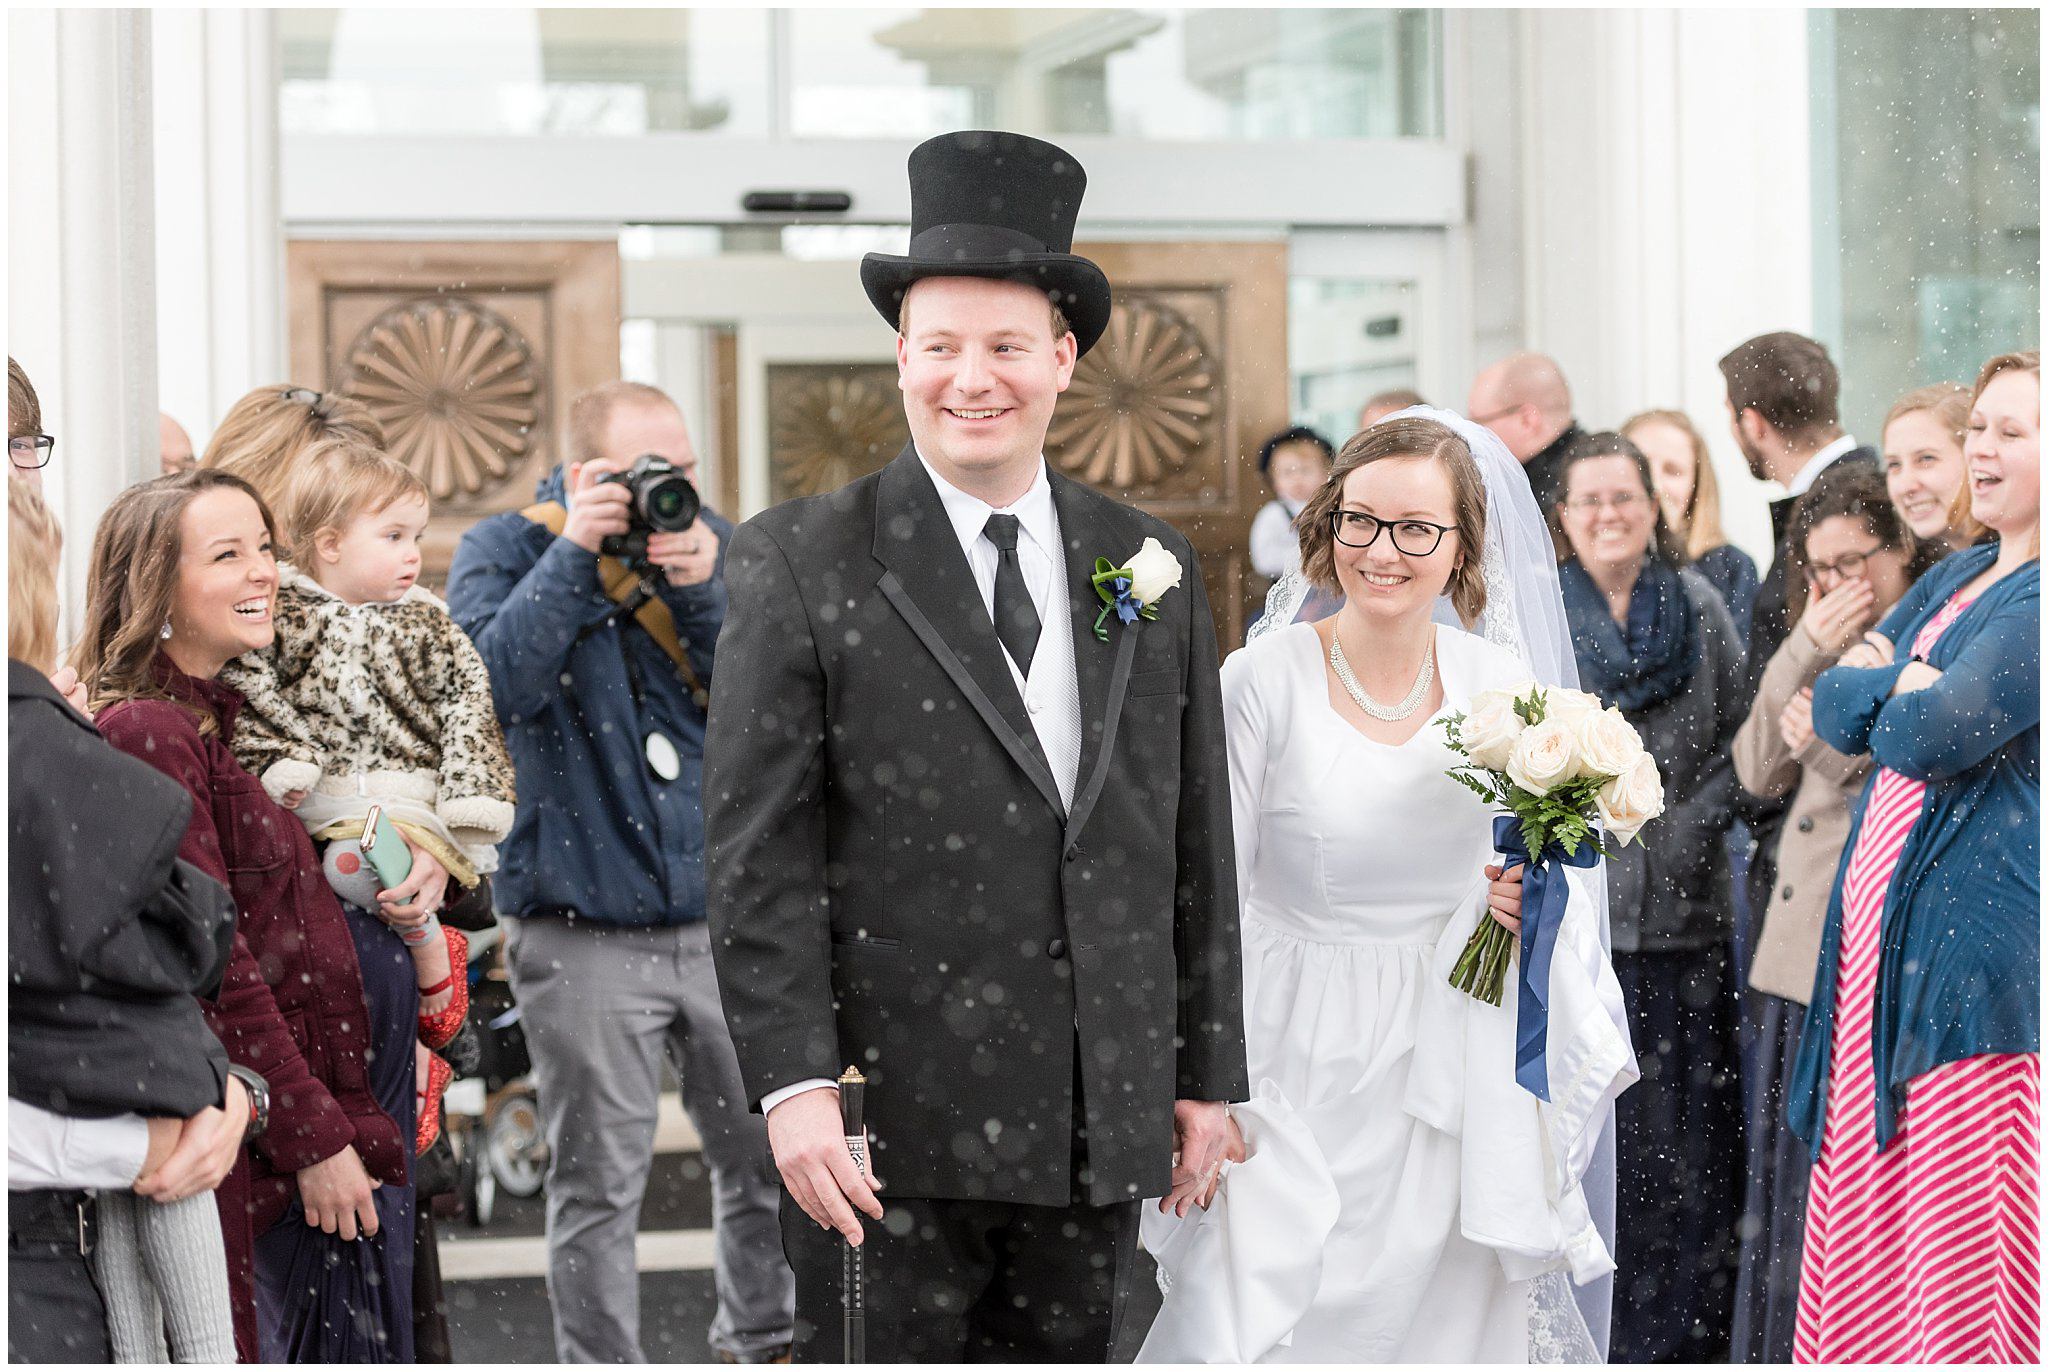 Snowy Wedding Day | Stress Free Wedding Day Advice | Jessie and Dallin Photography